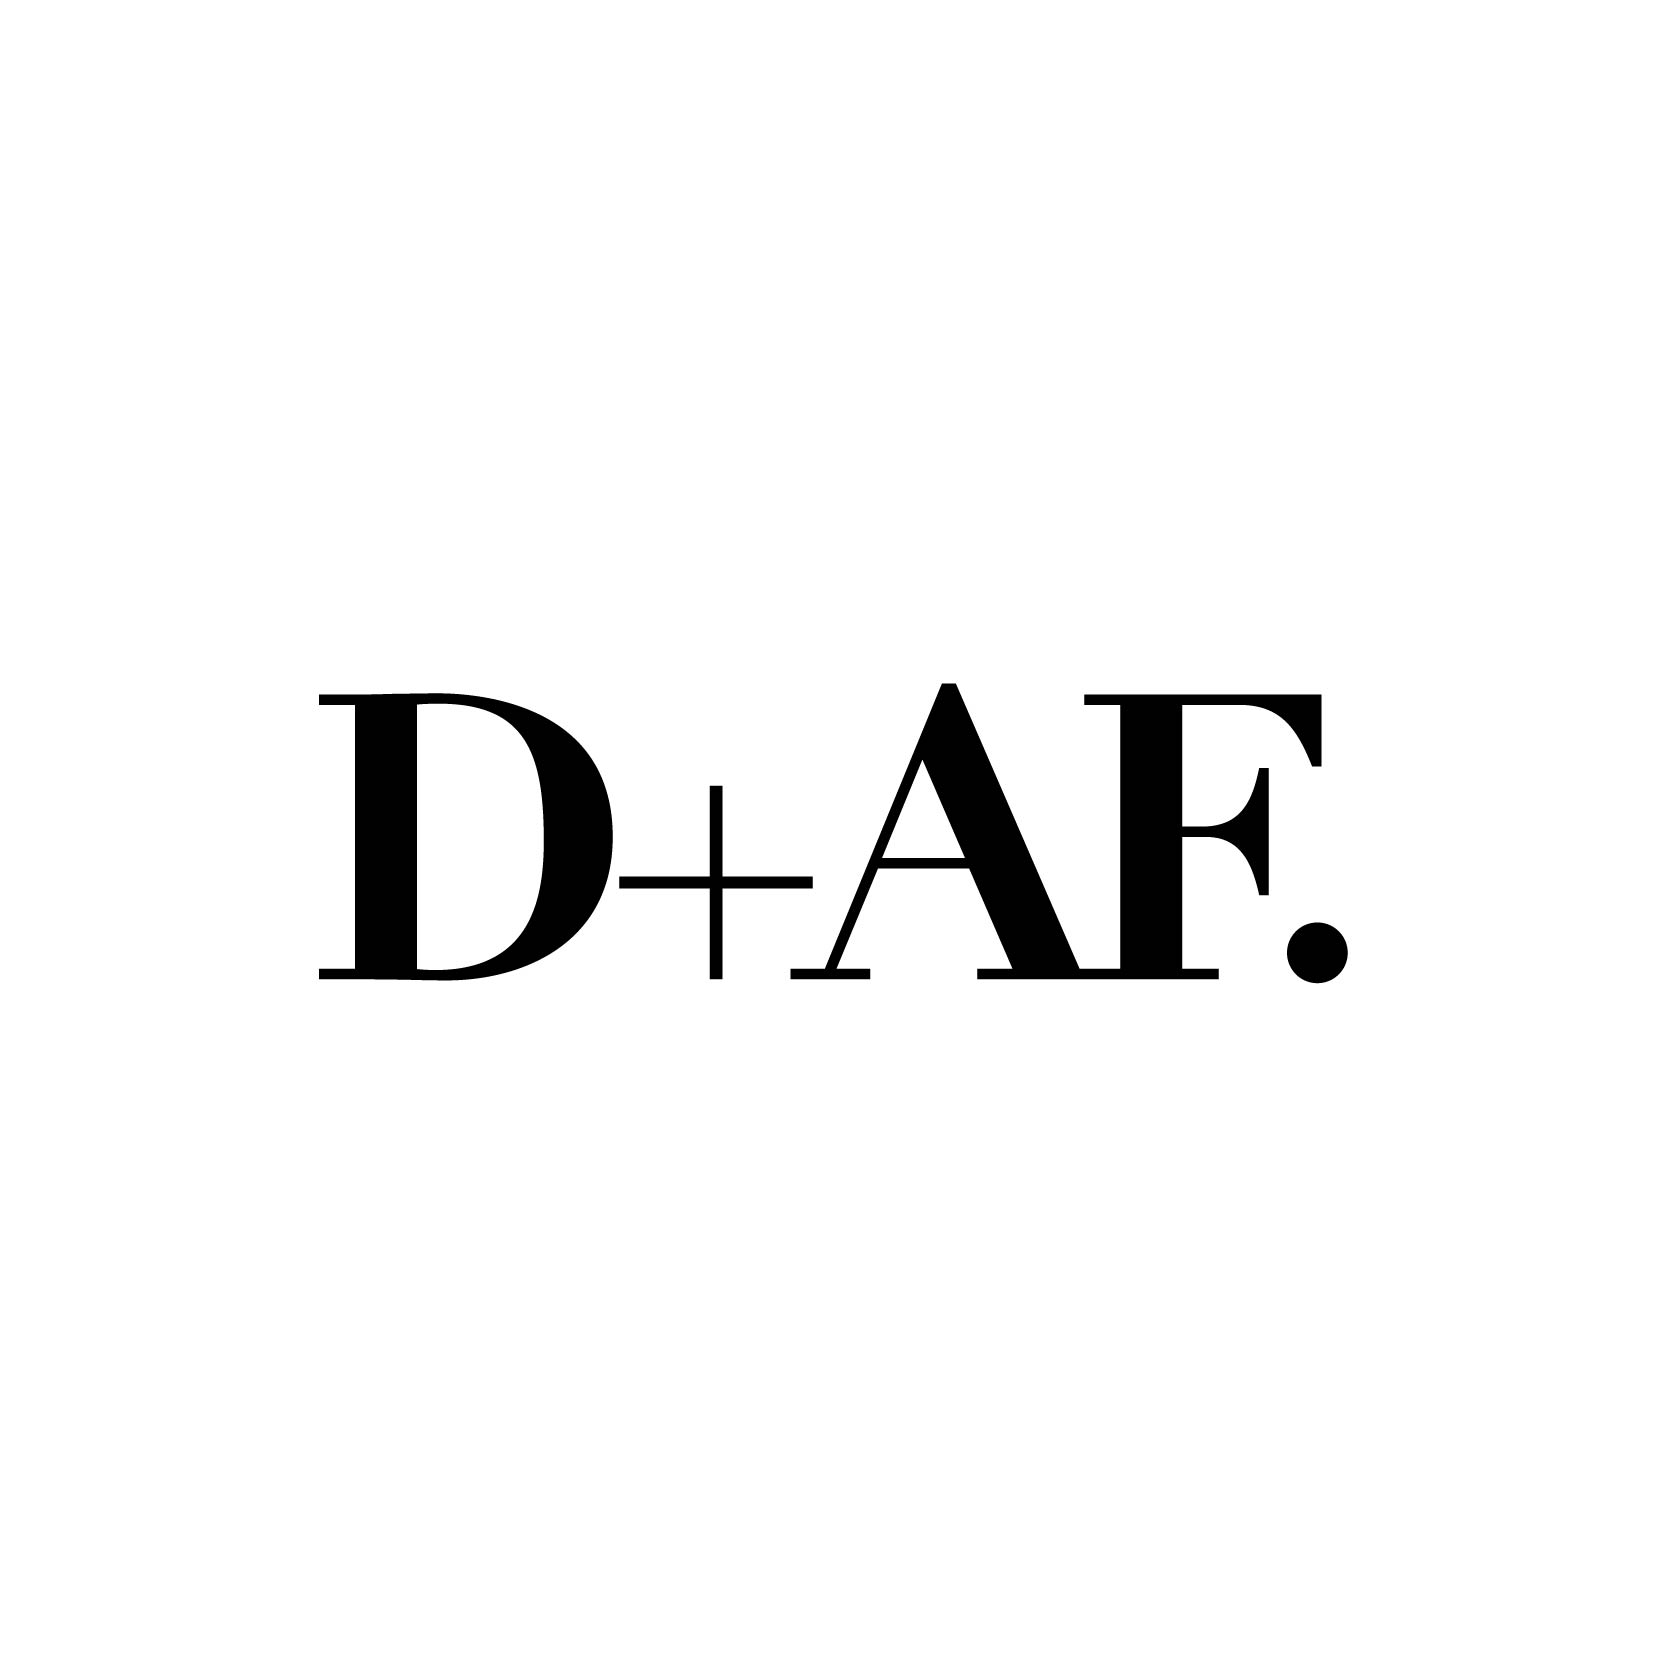 D+AF